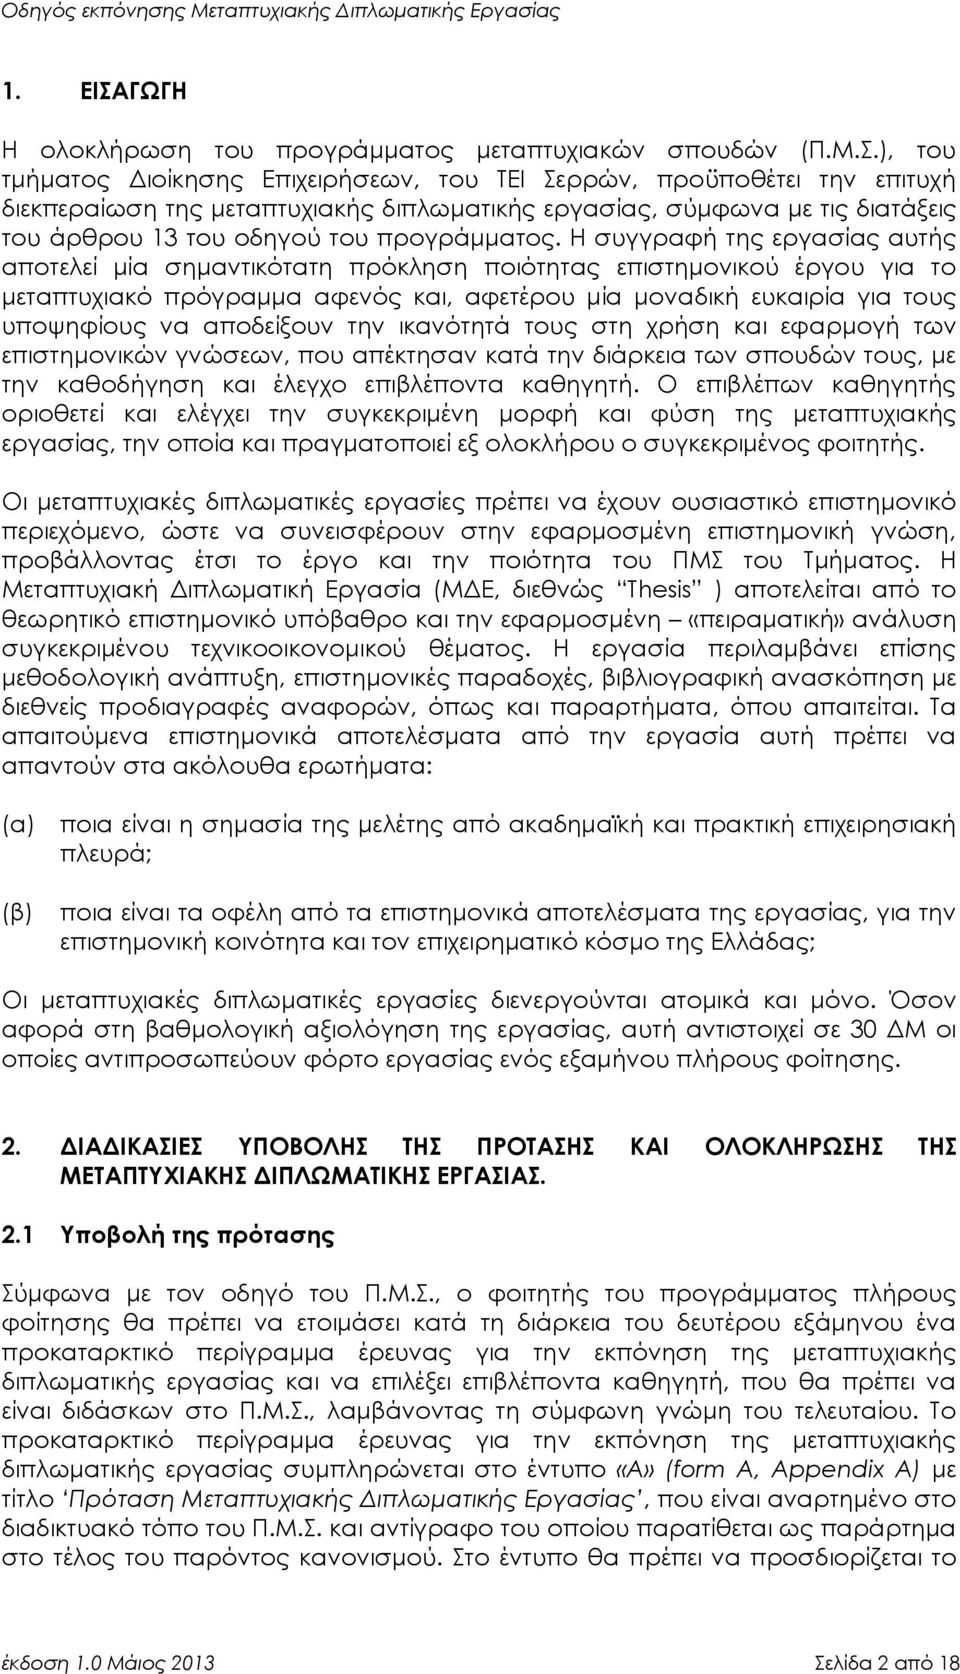 ), του τμήματος Διοίκησης Επιχειρήσεων, του ΤΕΙ Σερρών, προϋποθέτει την επιτυχή διεκπεραίωση της μεταπτυχιακής διπλωματικής εργασίας, σύμφωνα με τις διατάξεις του άρθρου 13 του οδηγού του